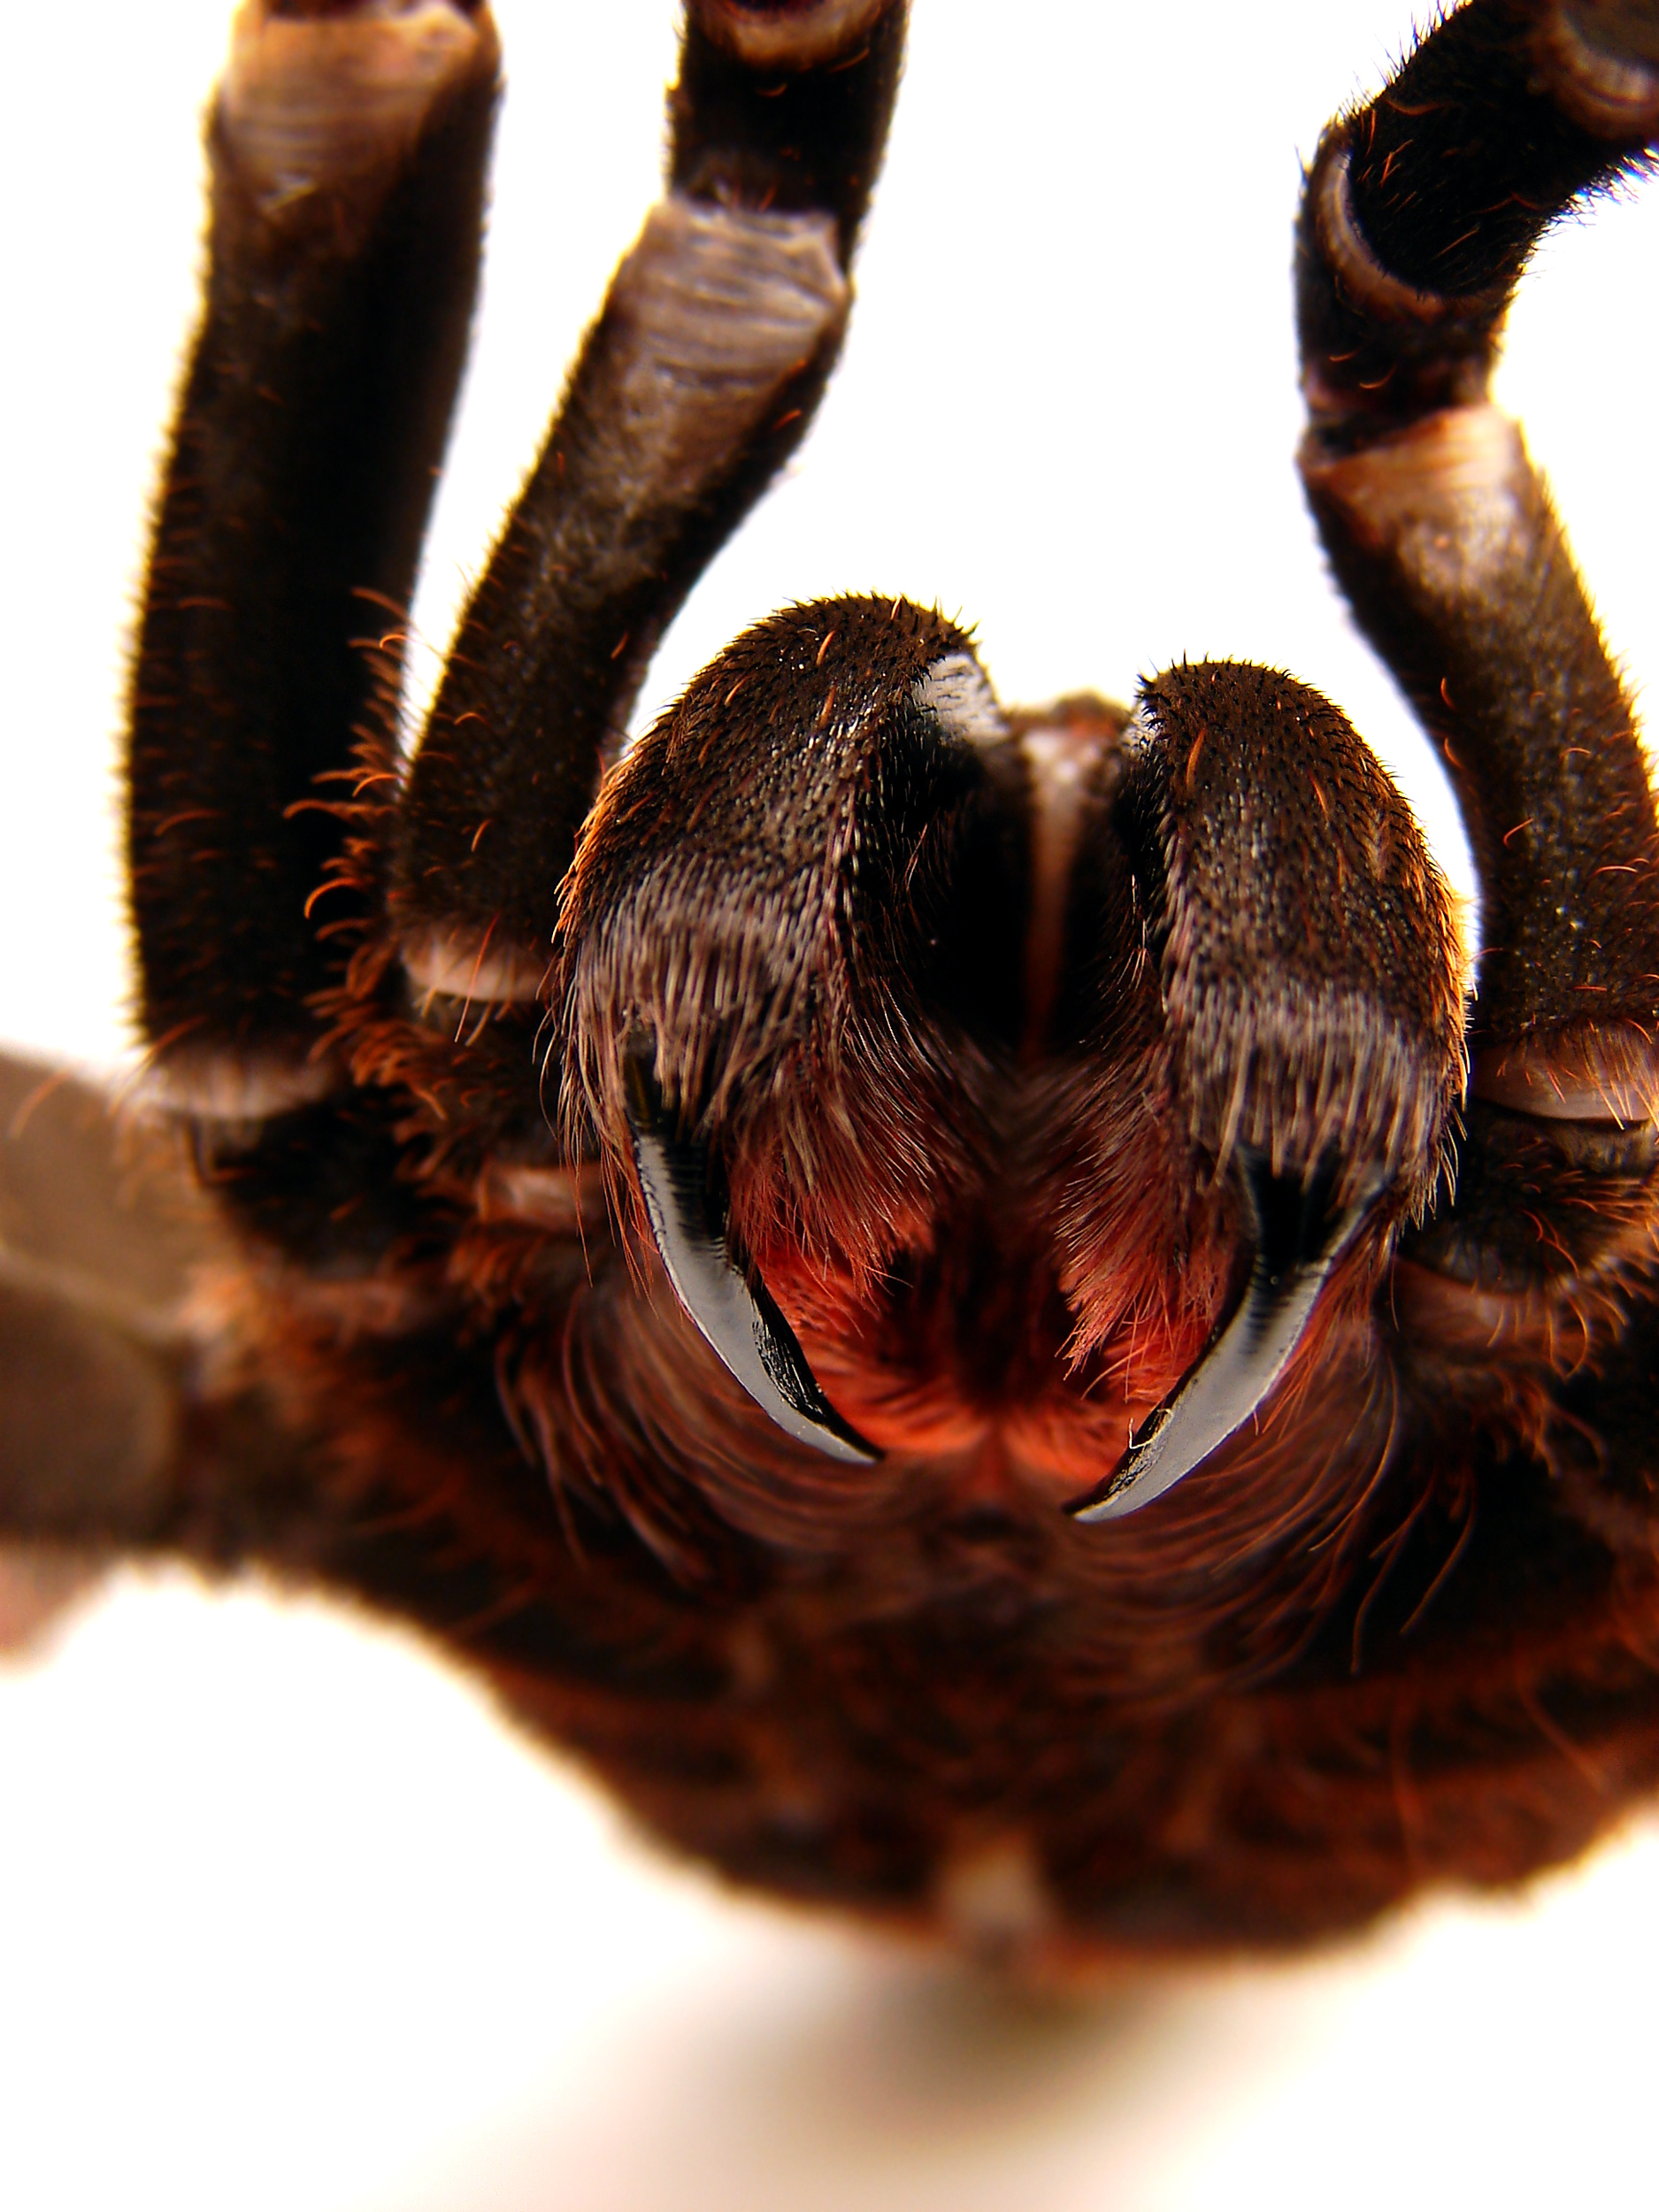 Sharp, shiny, pointy fangs of a tarantula